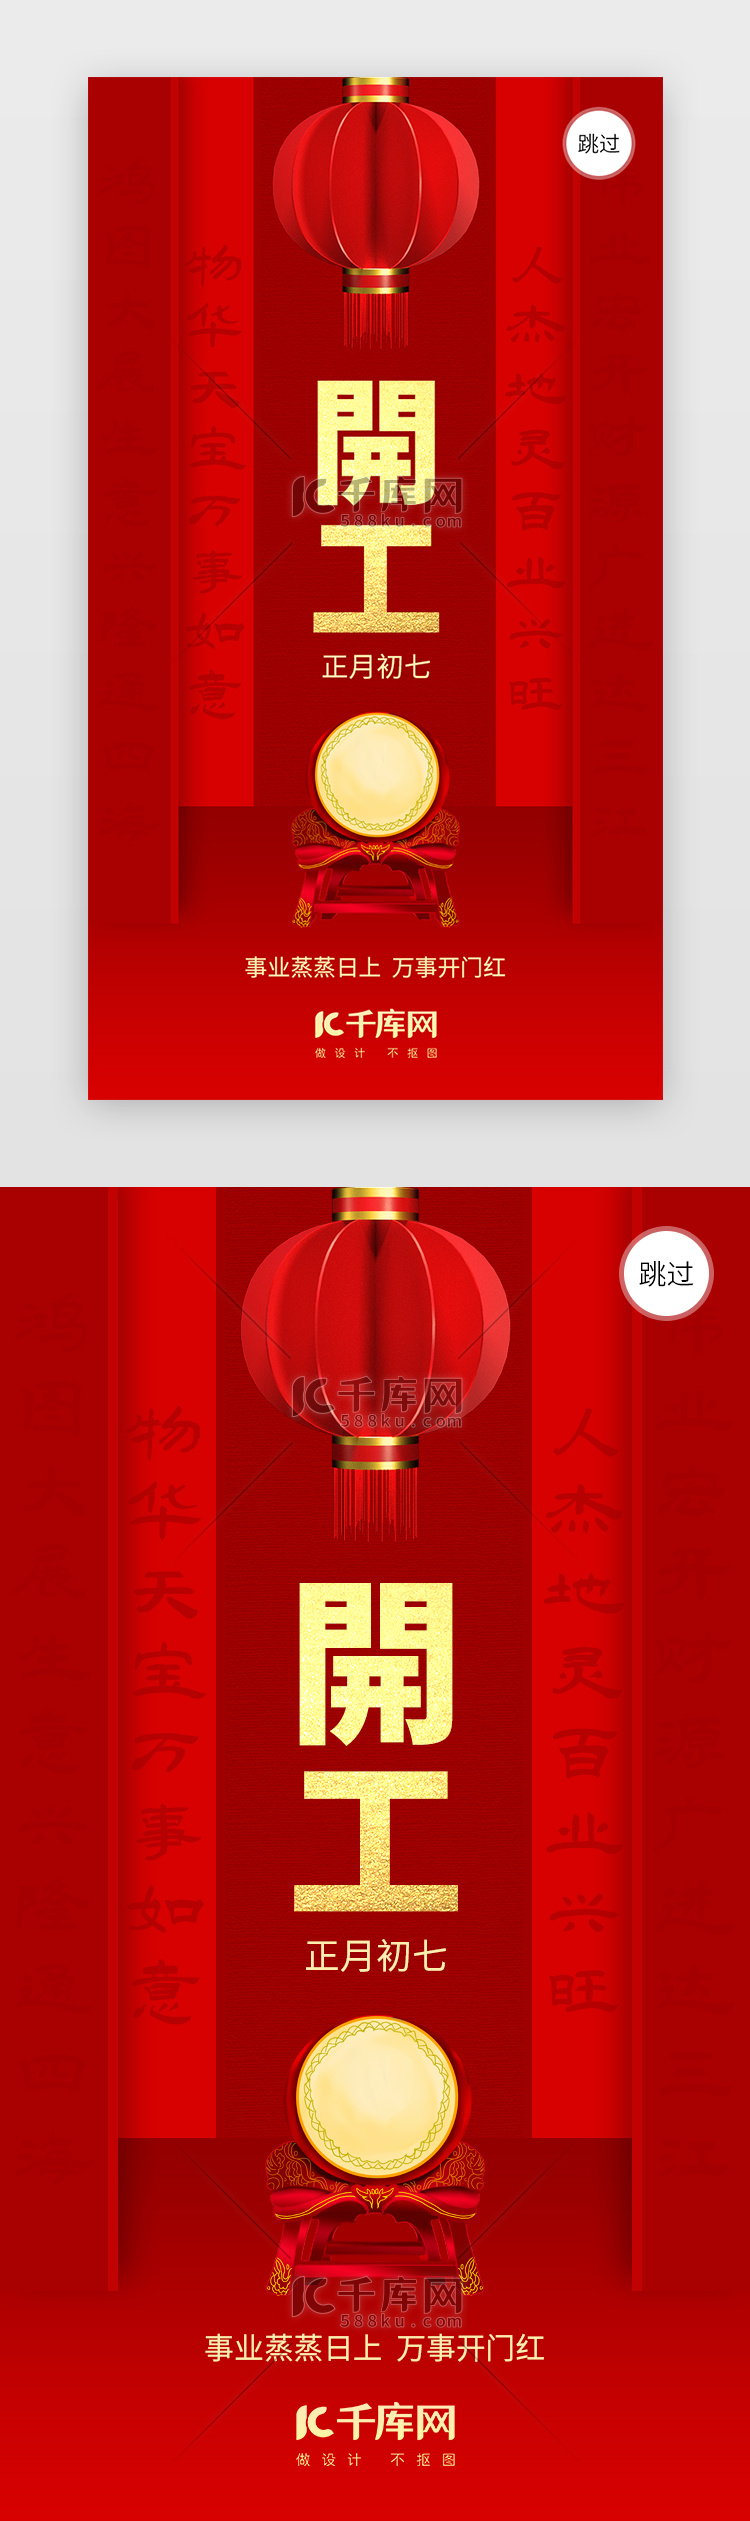 新年开工大吉app闪屏创意红色灯笼